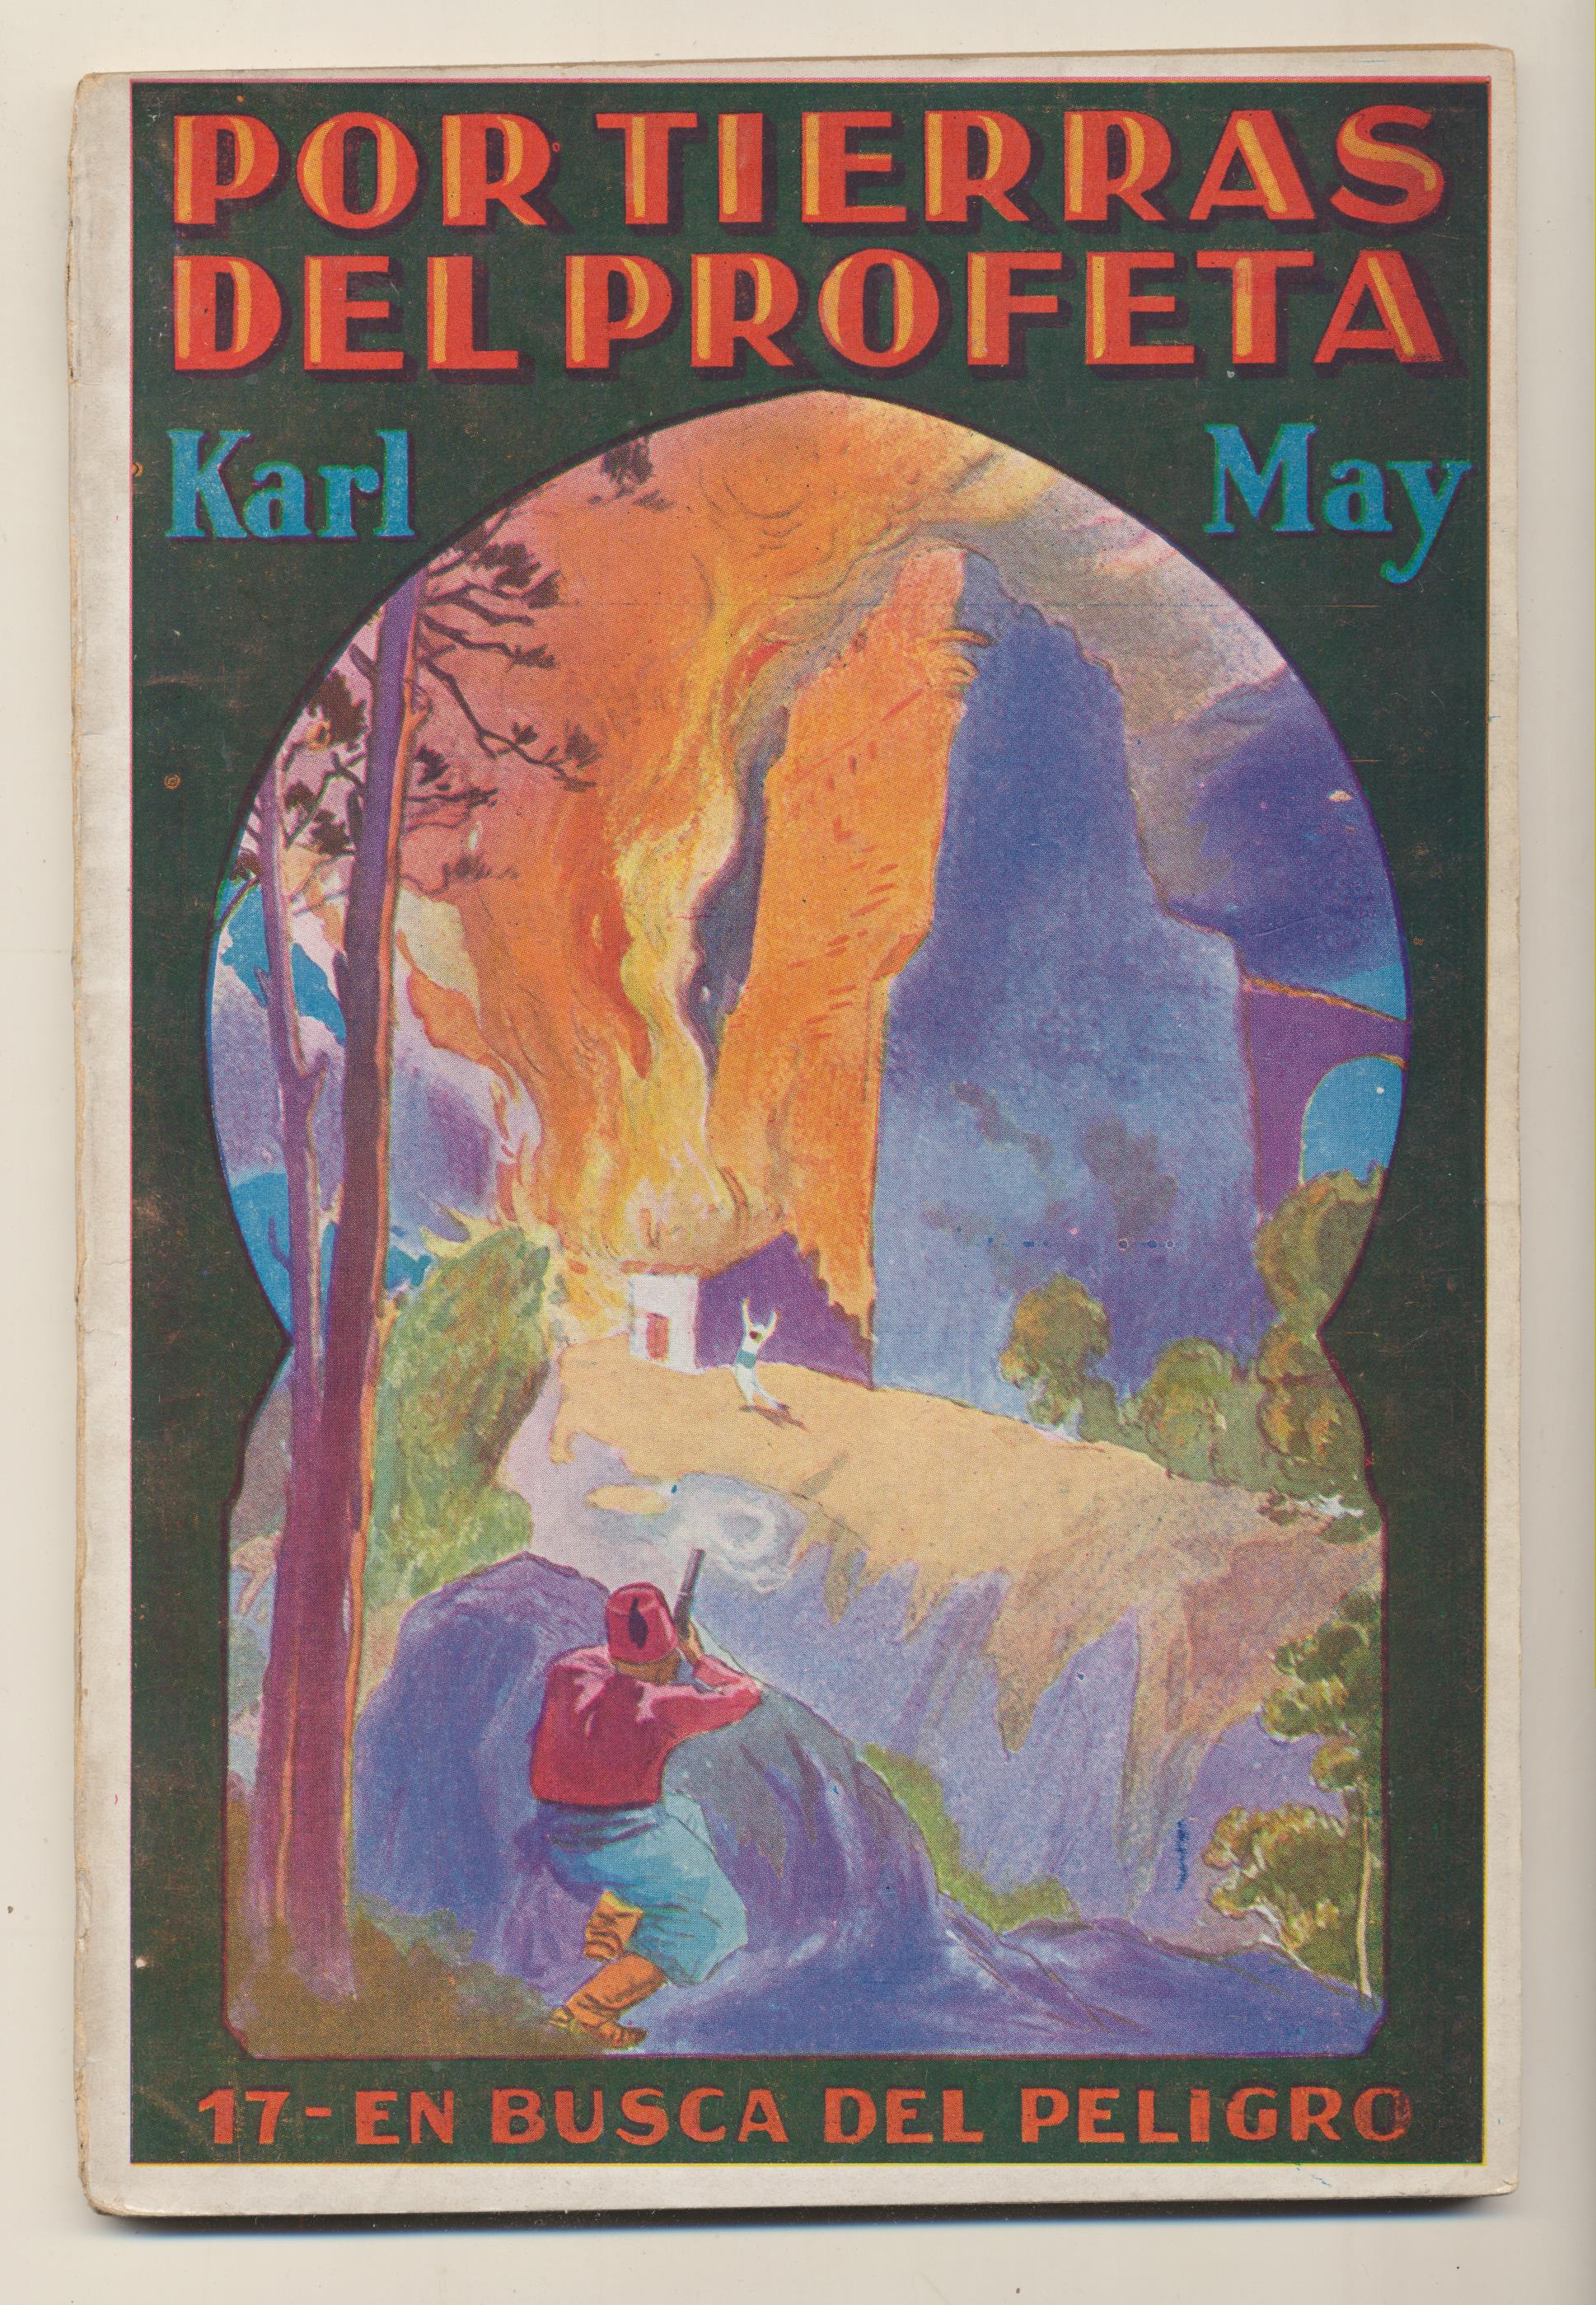 Por Tierras del Profeta nº 17. En busca del peligro por Karl May. Gustavo Gili 1928